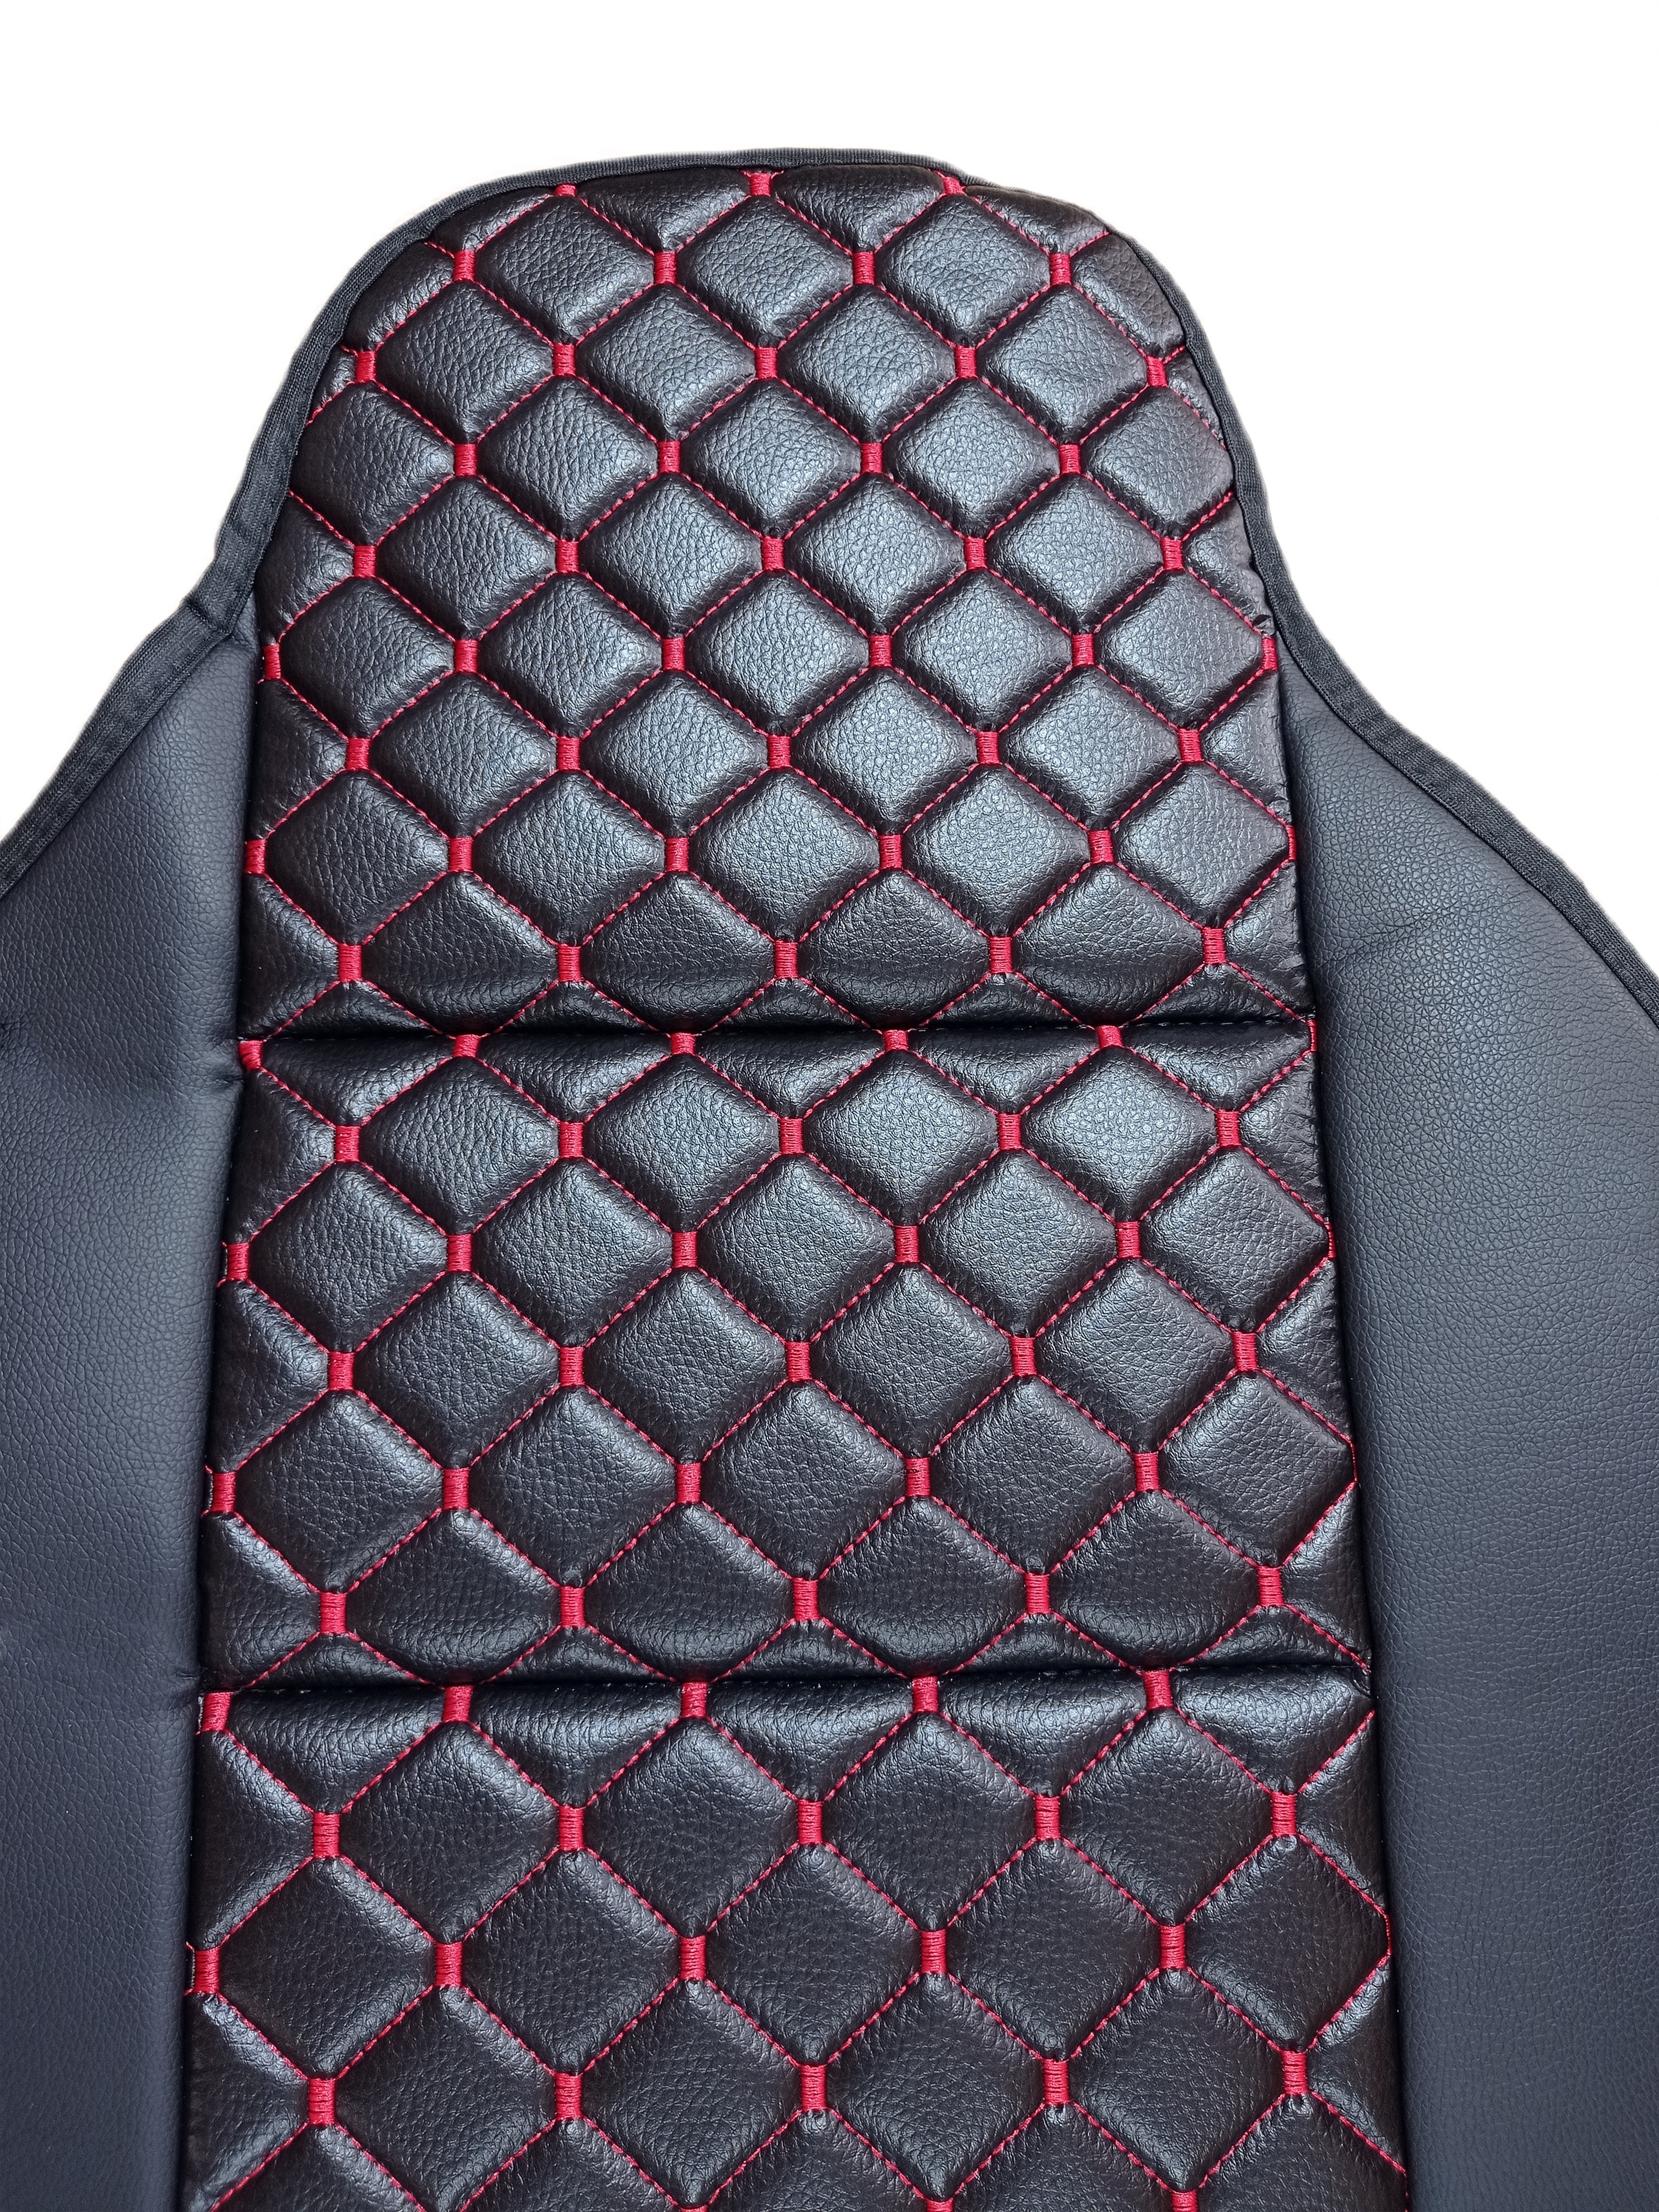 Sitzbezüge Schonbezüge Schutz Universal für PKW Schwarz Rot Leder Öko Leder